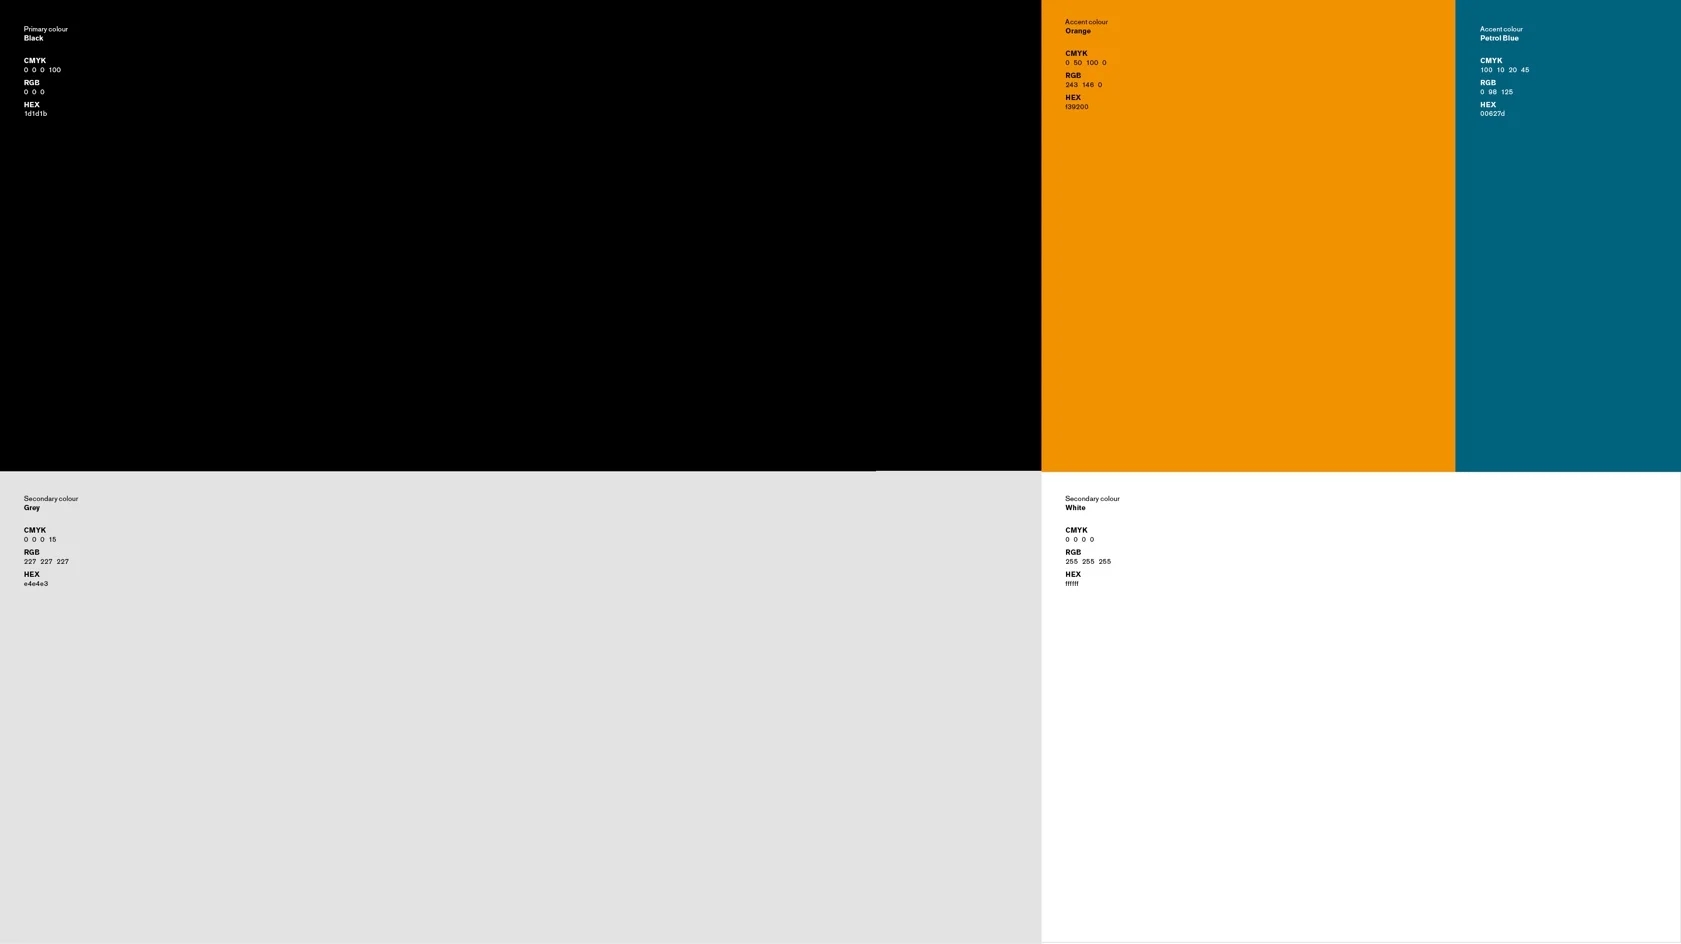 Anza Pros färgpalett med svart, grått, vit, orange och en grönblå färg. Färgkoder syns